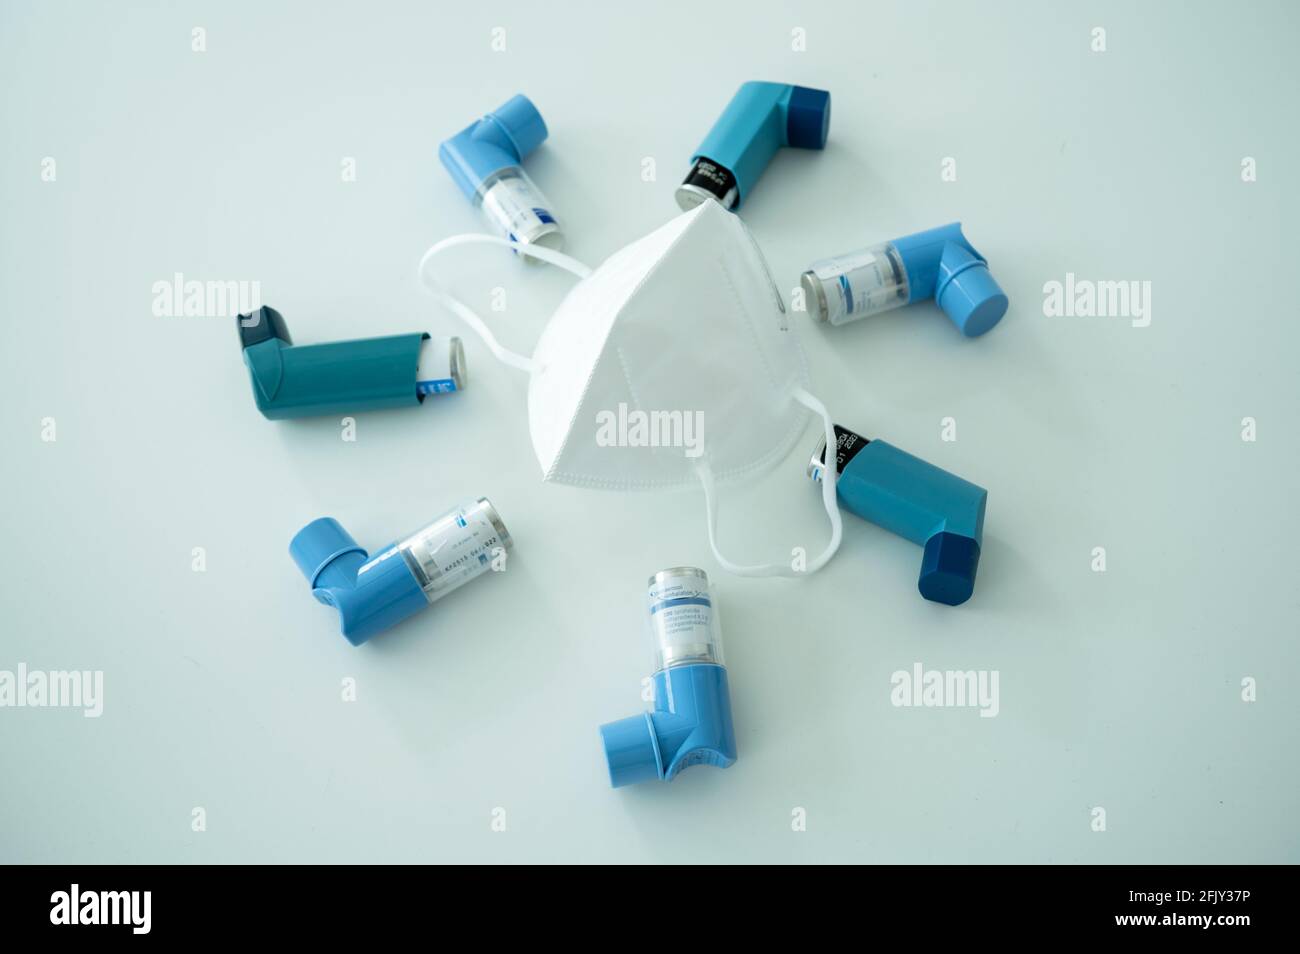 Verschiedene Asthmaspray-Inhalatoren und eine Covid-19 Atemschutzmaske auf Eine weiße Oberfläche Stockfoto